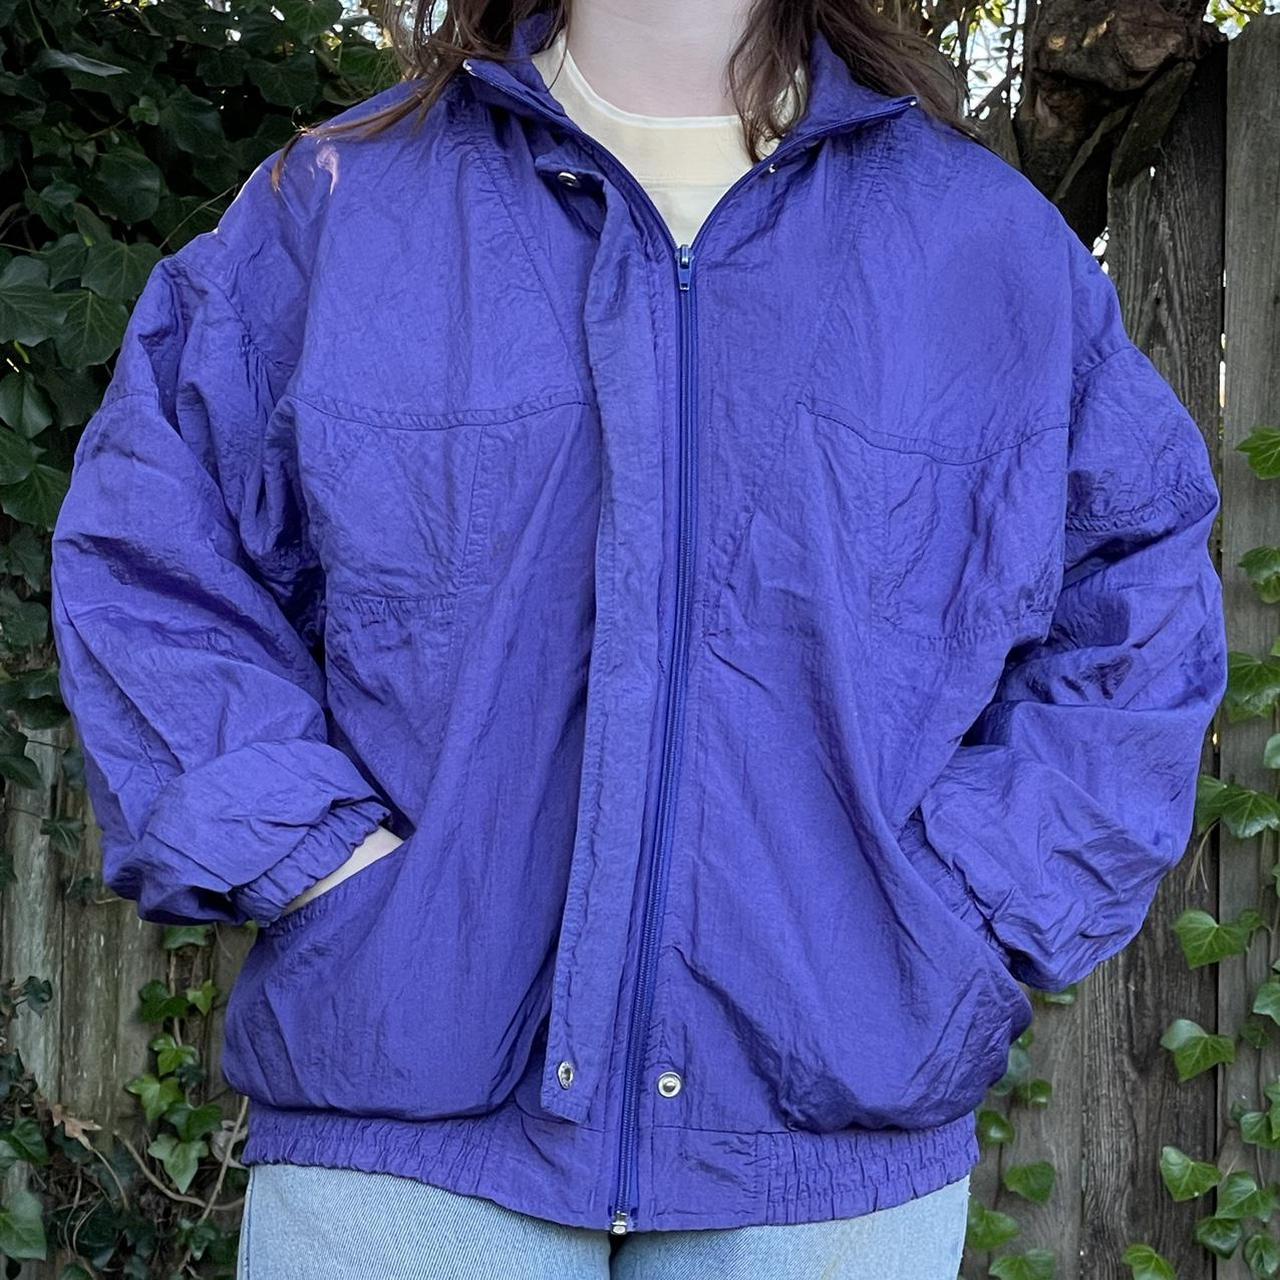 Vintage 80’s Purple Bomber Jacket - Size... - Depop